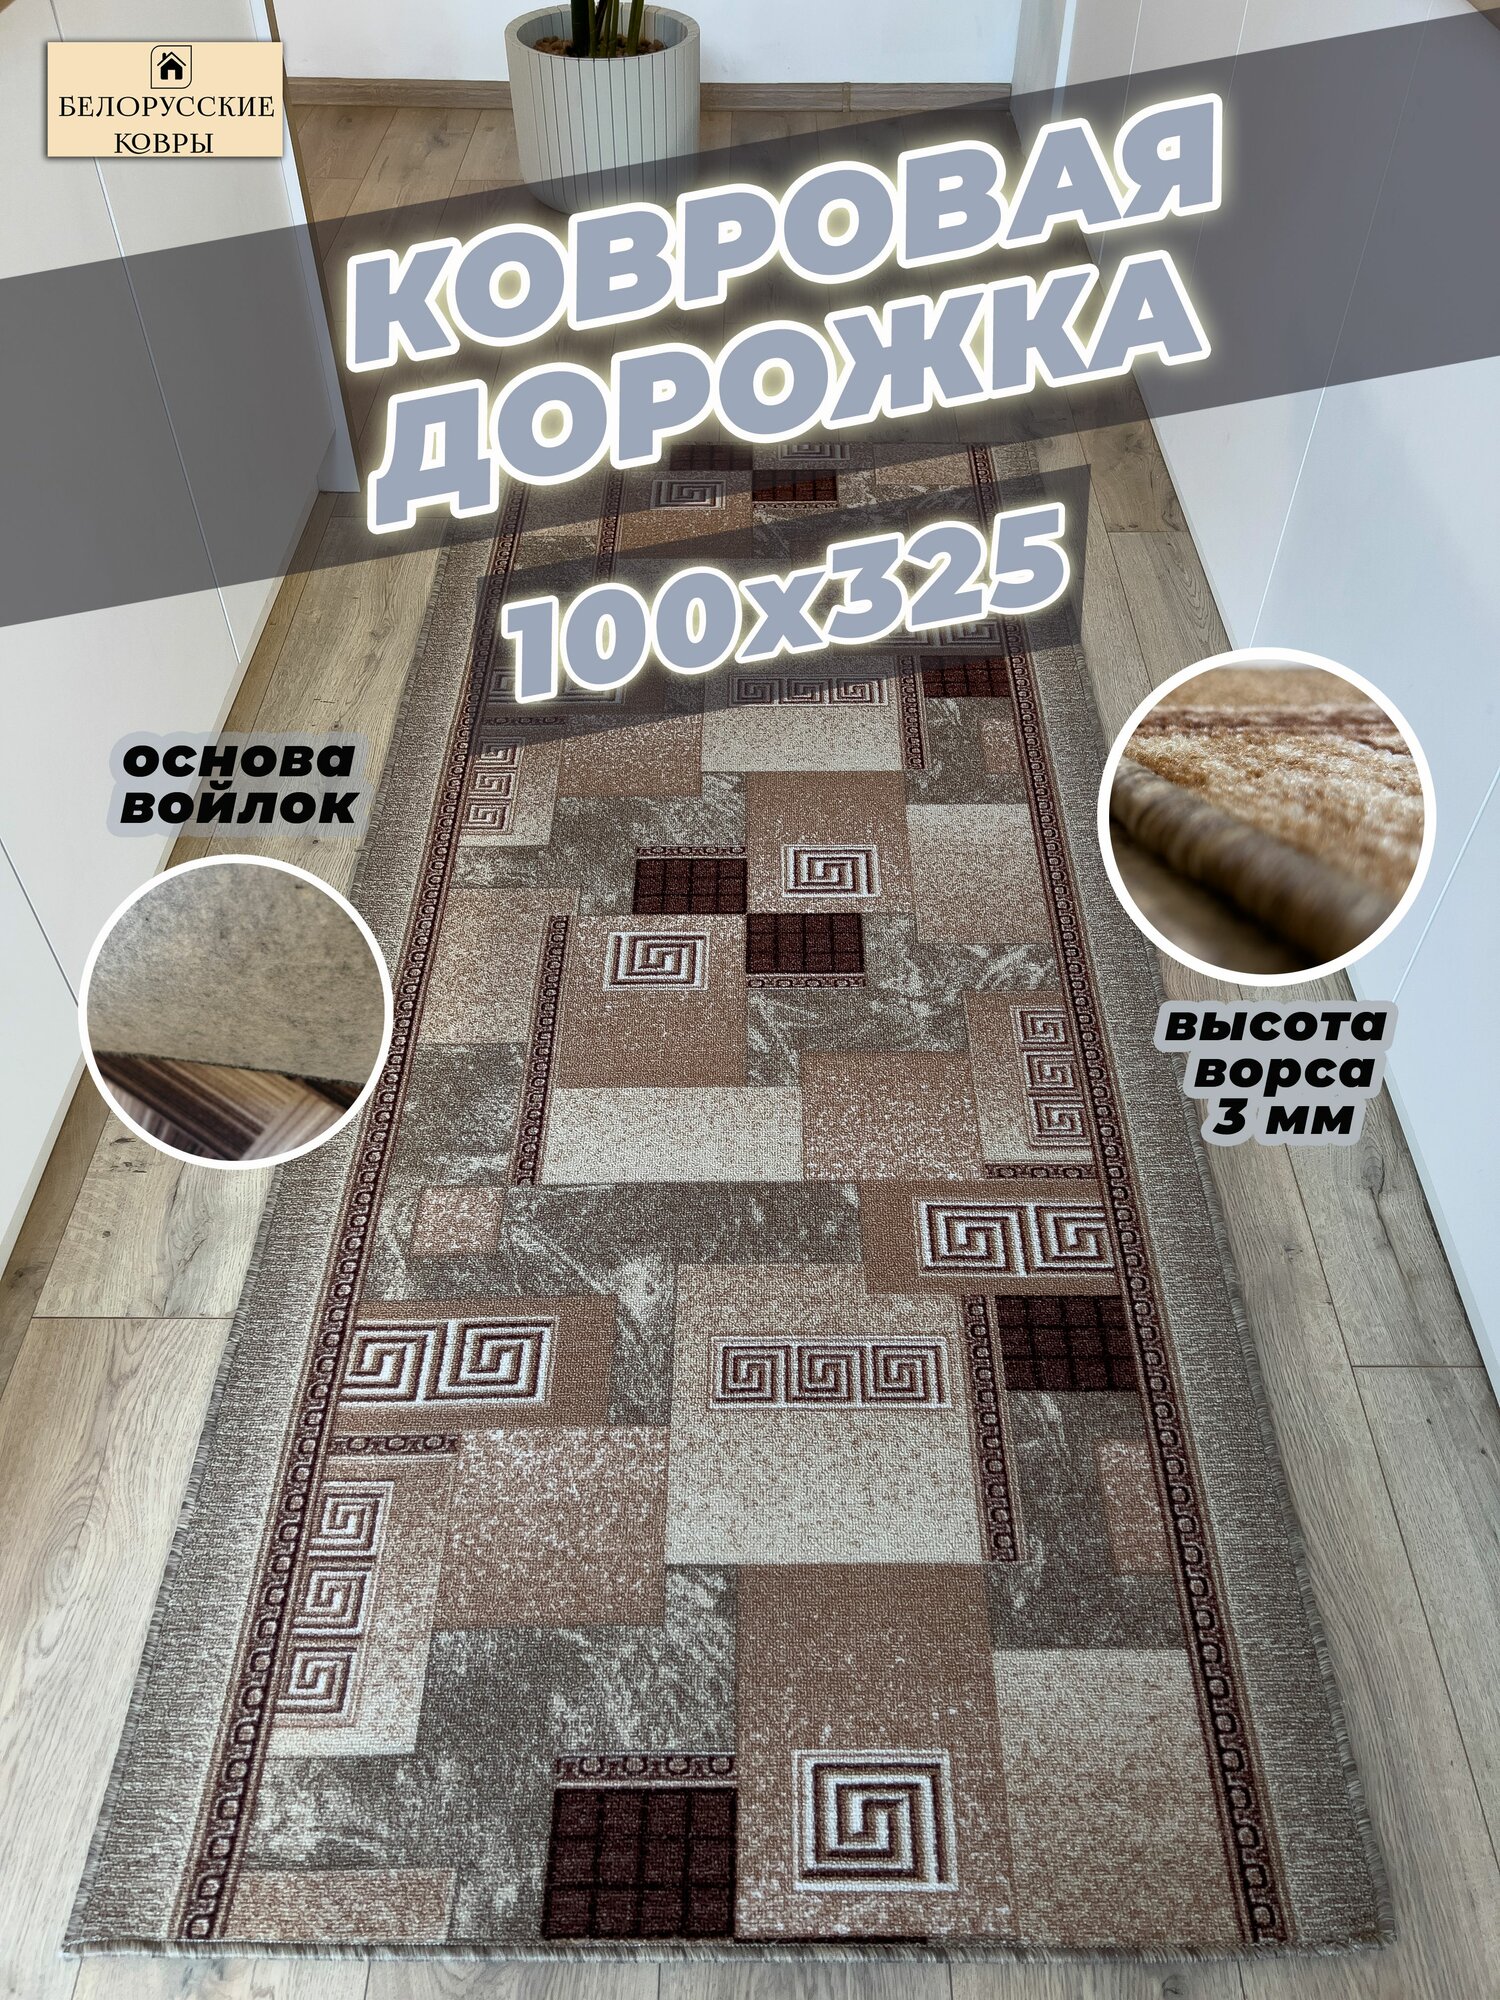 Белорусские ковры, ковровая дорожка 100х325см./1,0х3,25м.